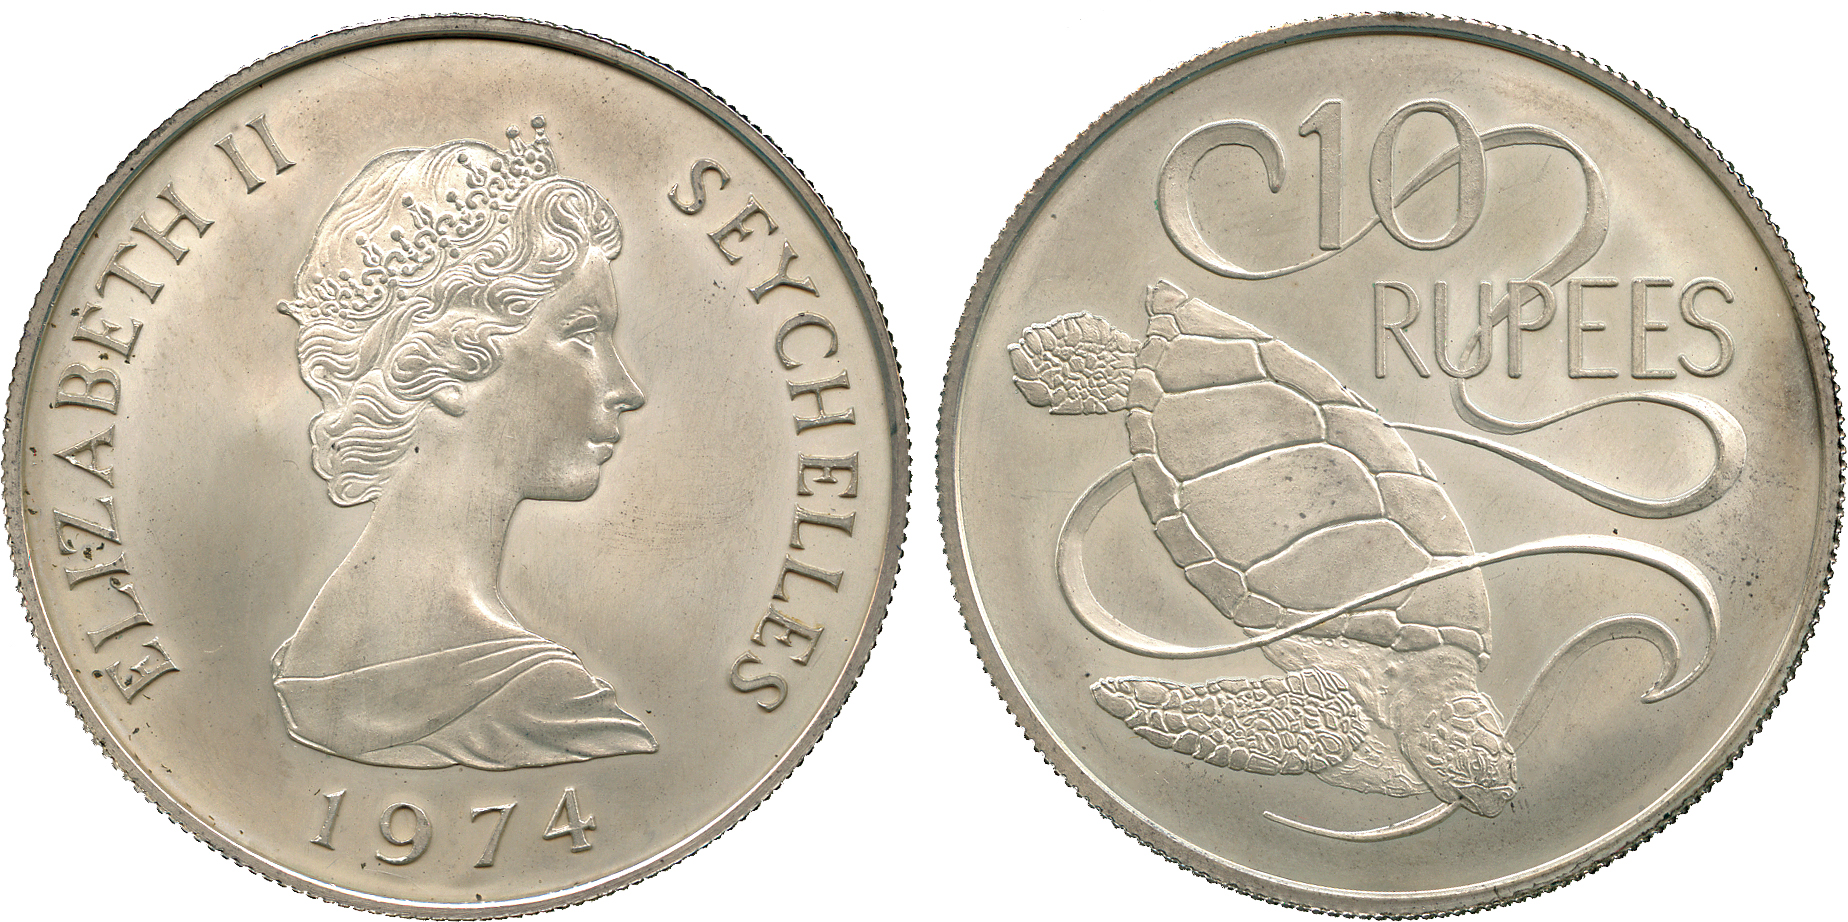 † AFRICA. Seychelles. Elizabeth II, Silver Matte Proof 10-Rupees, 1974, rev green sea turtle (KM